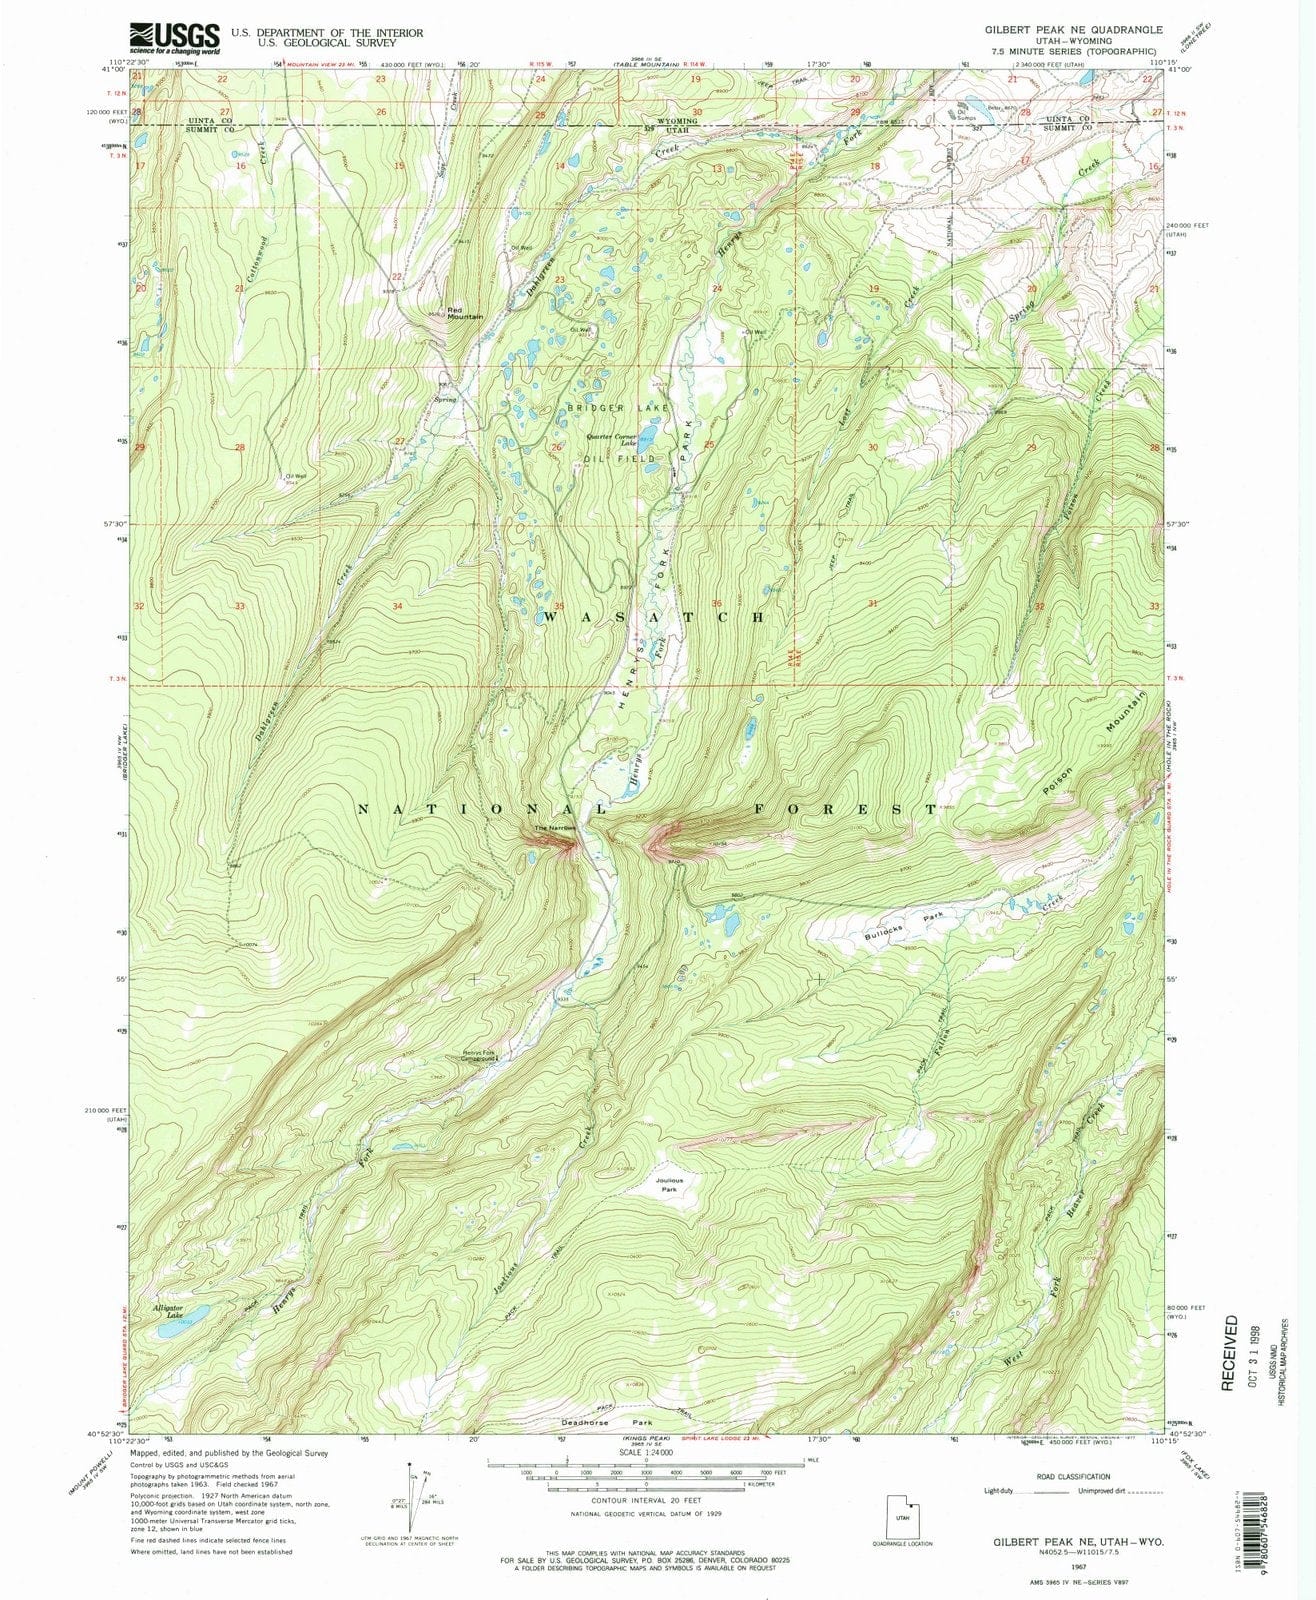 1967 Gilbert Peak, UT - Utah - USGS Topographic Map